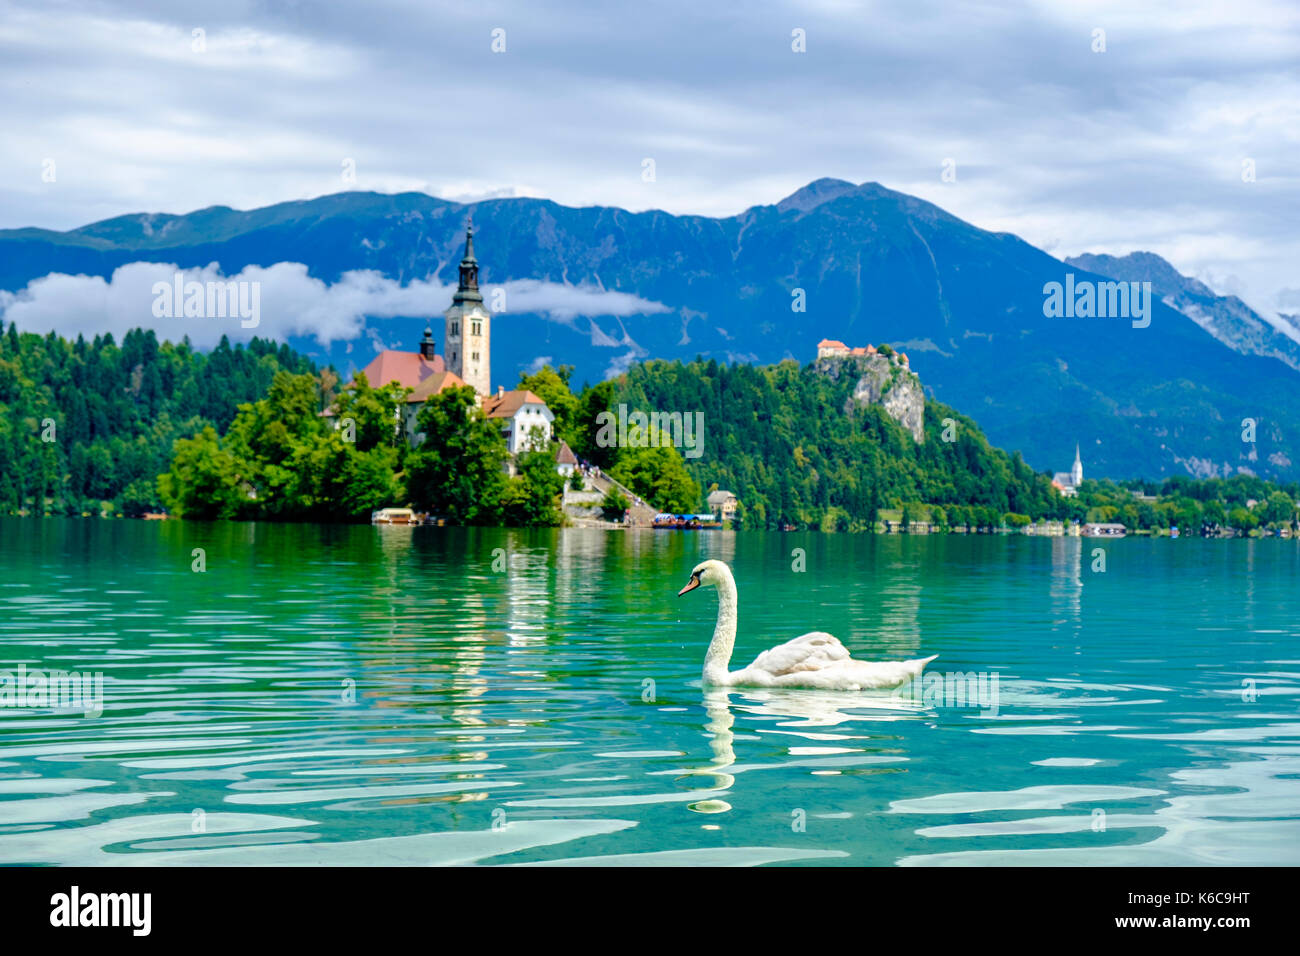 Ein Schwan wird die Insel, blejski otok, mit der Wallfahrtskirche zu Maria Himmelfahrt über See gesehen dedizierte Bled, Blejsko Jezero Stockfoto